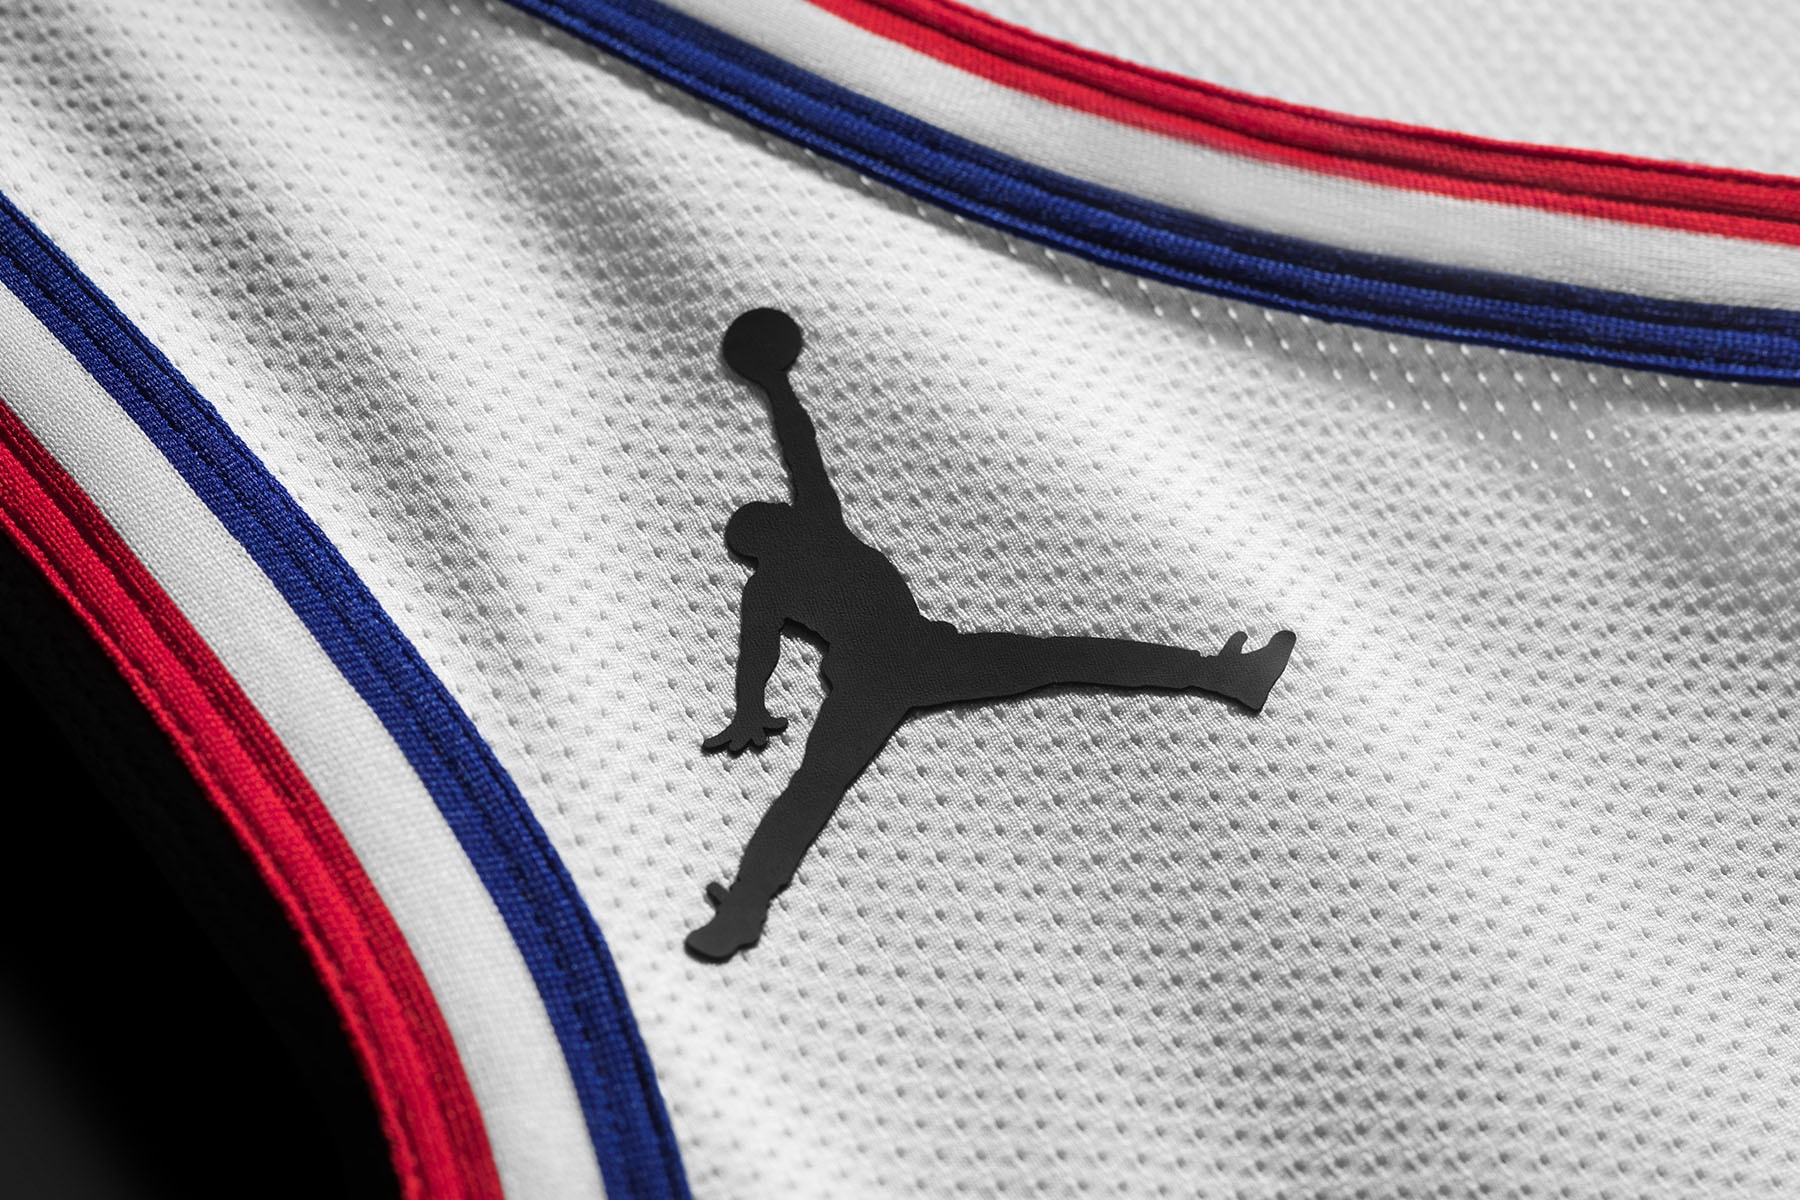 ジョーダン ブランド Jordan Brand が2019年の NBA オールスターユニフォームを発表